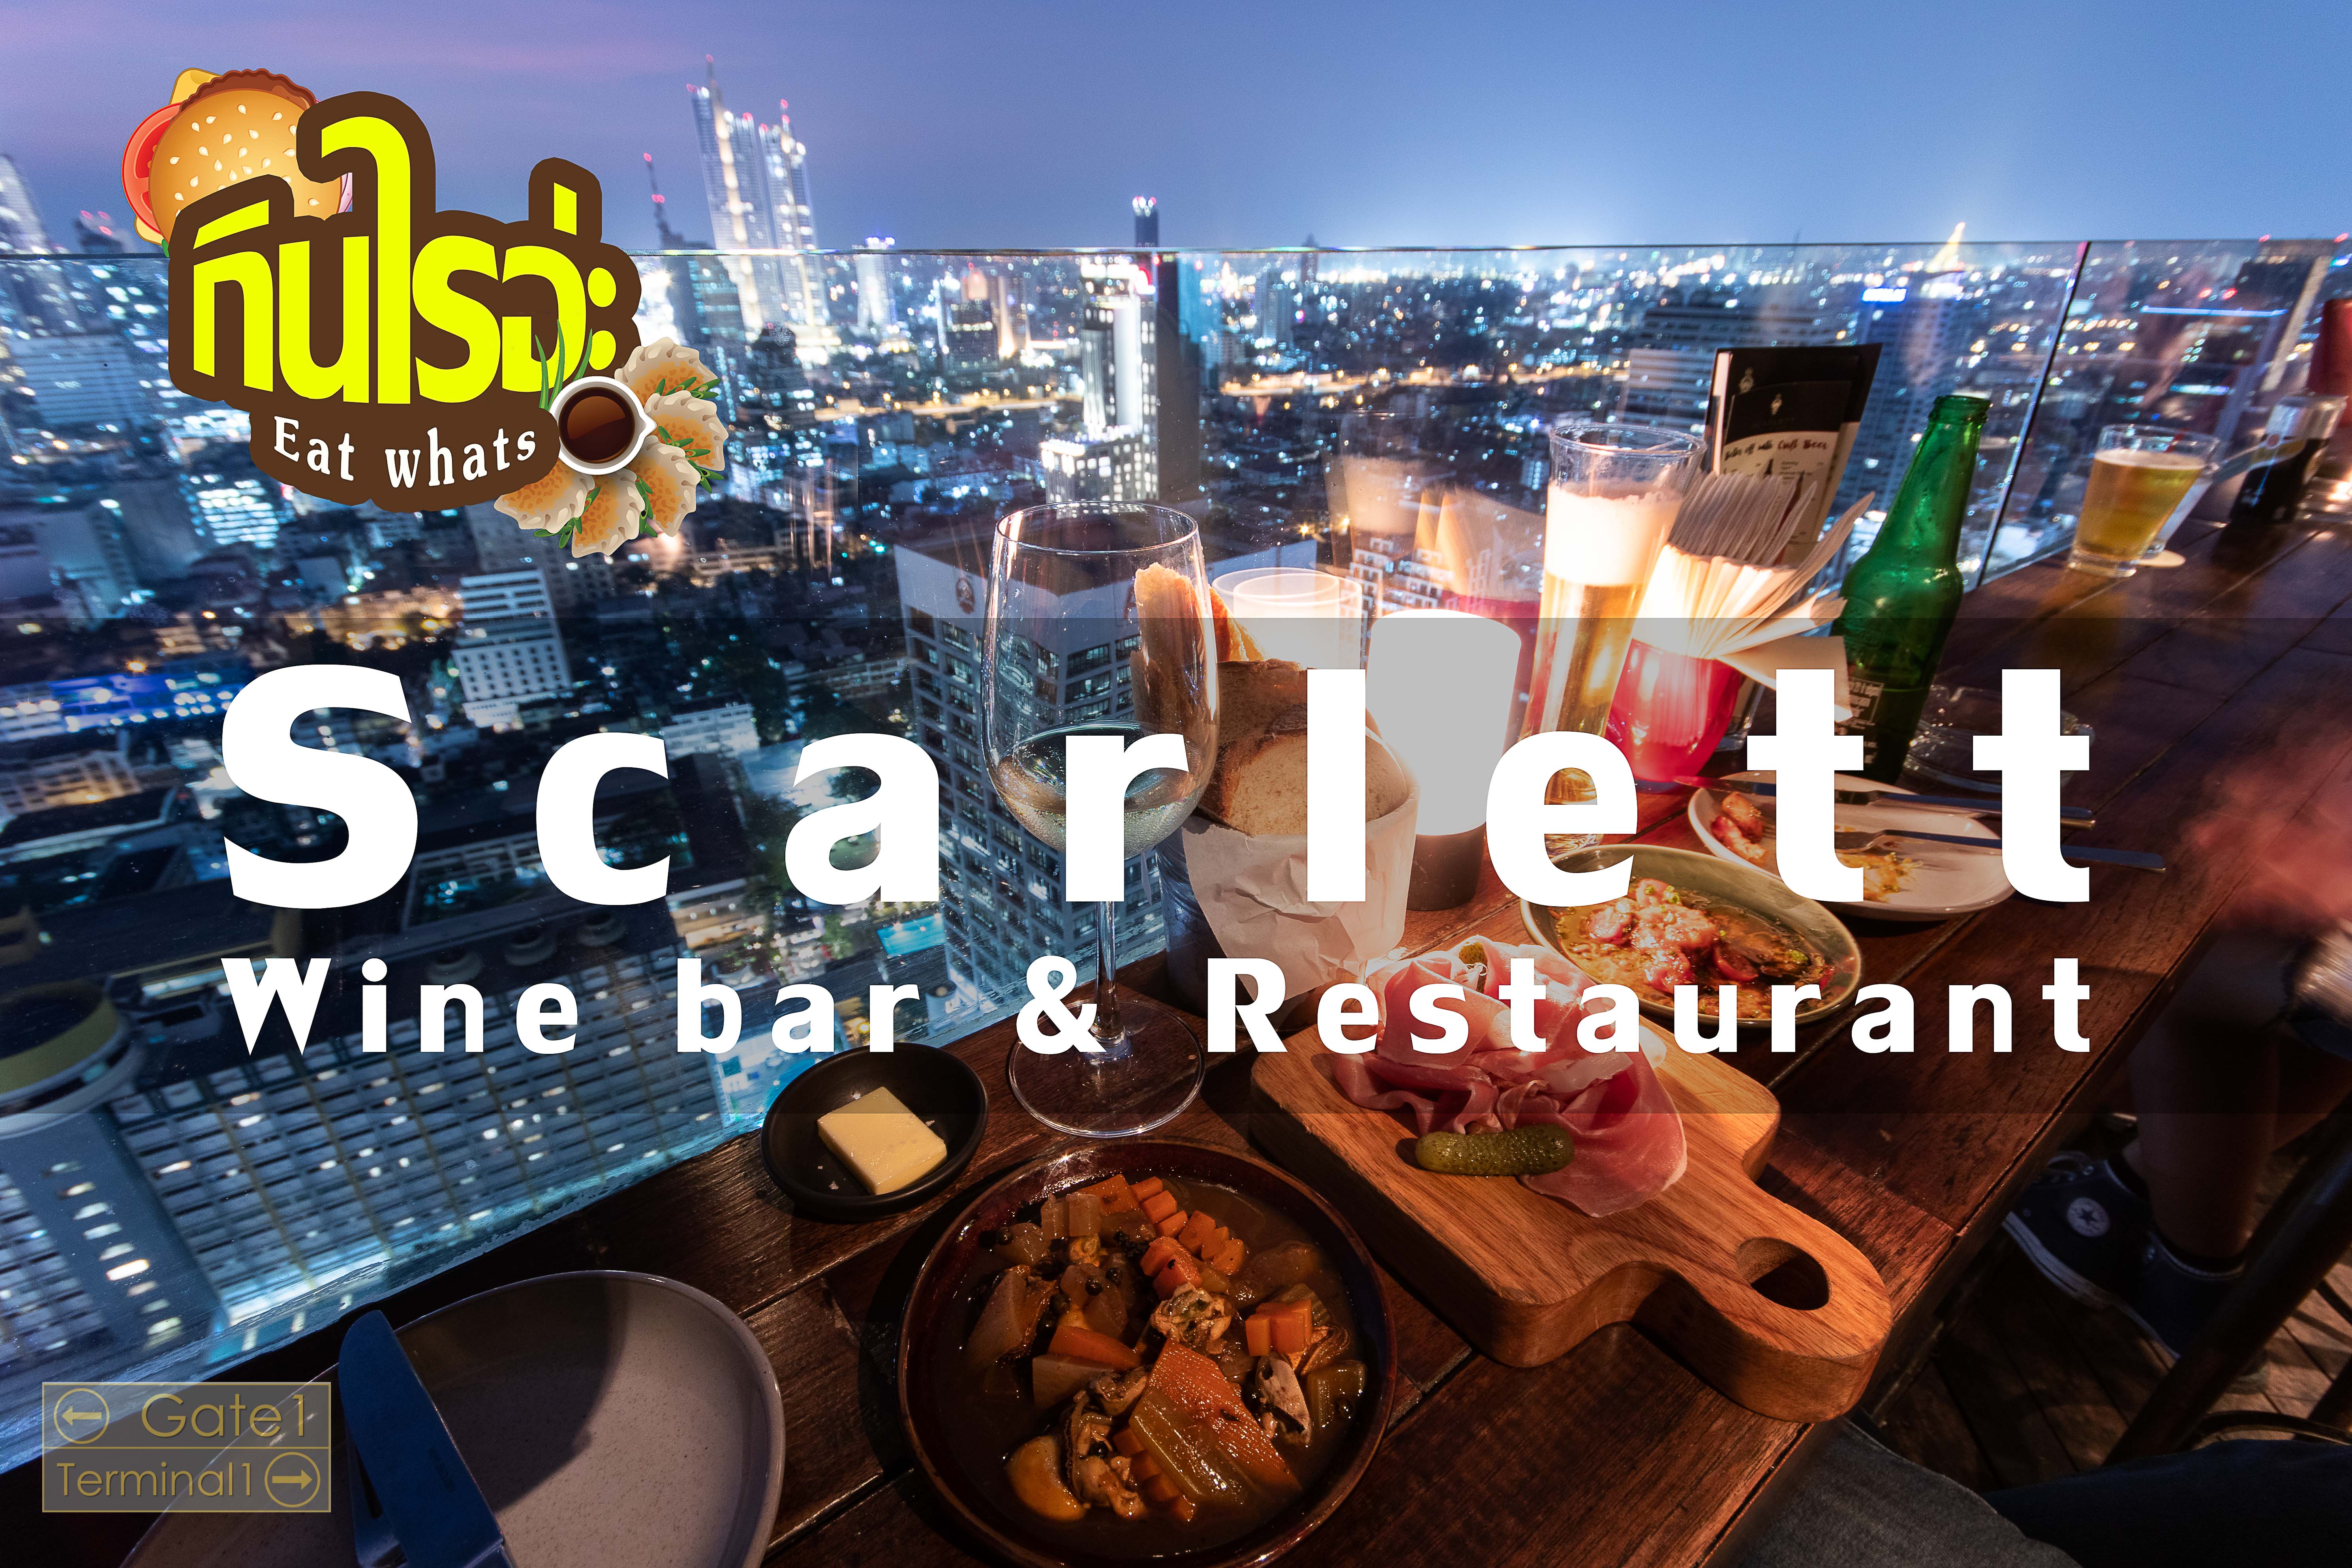 Review Scarlett Wine bar & Restaurant